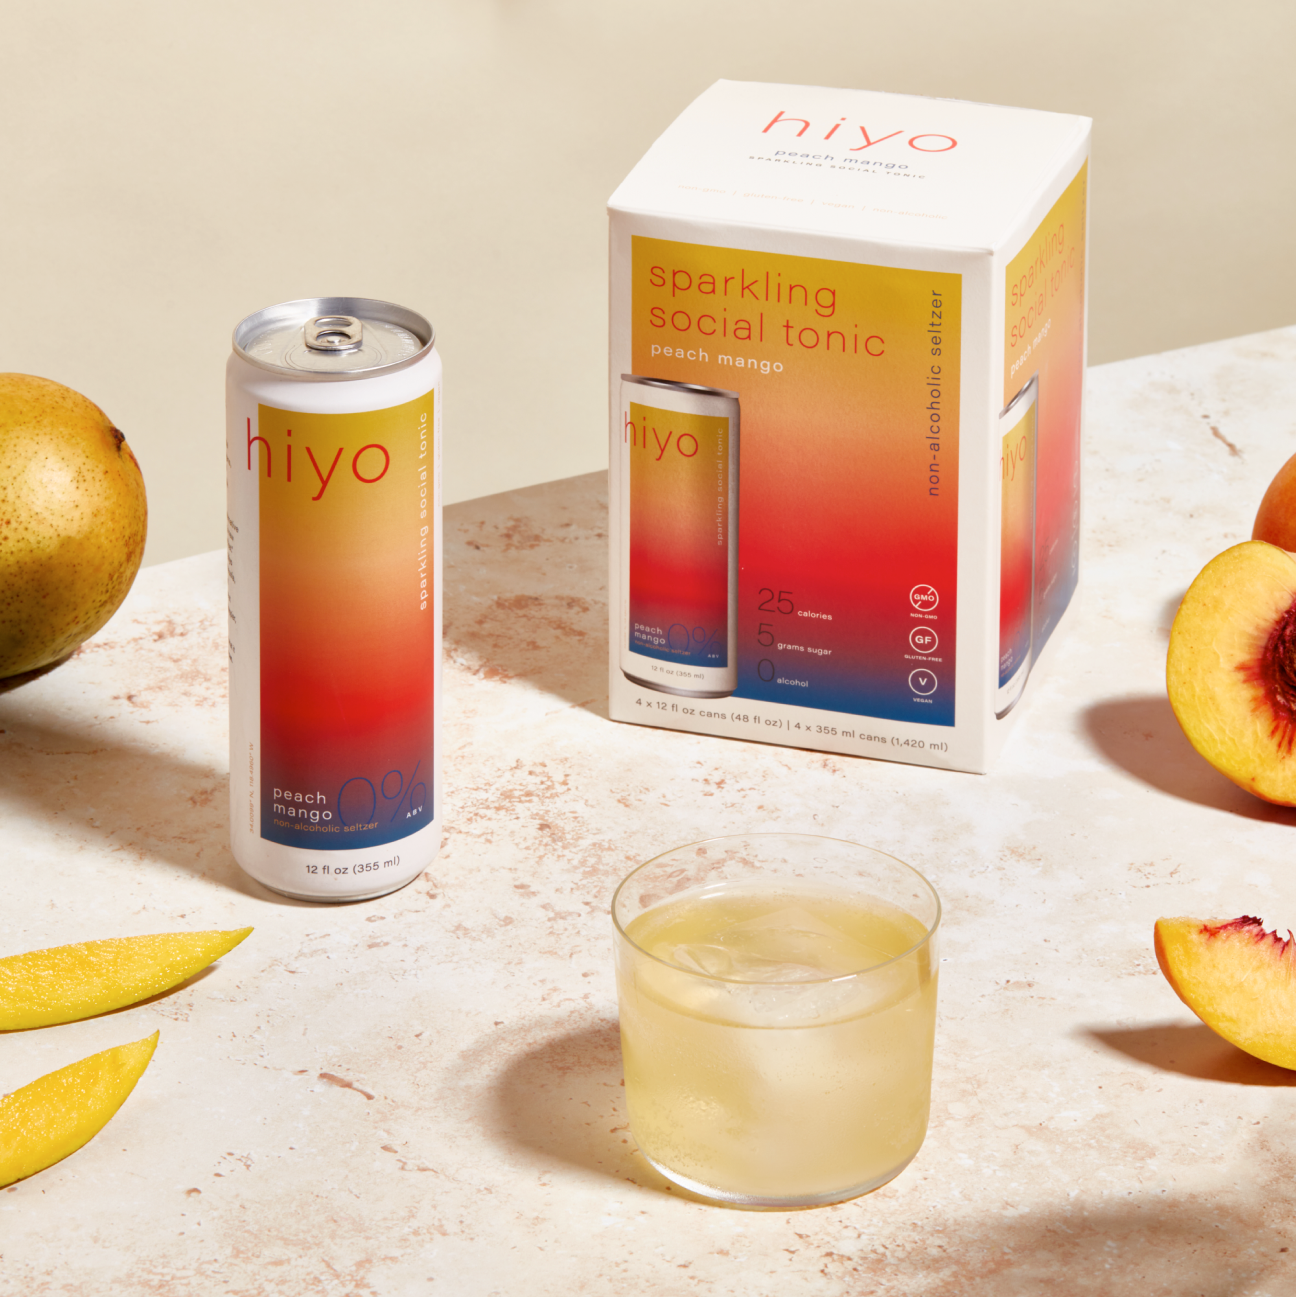 hiyo - peach mango seltzer - three 4-packs of 12oz cans